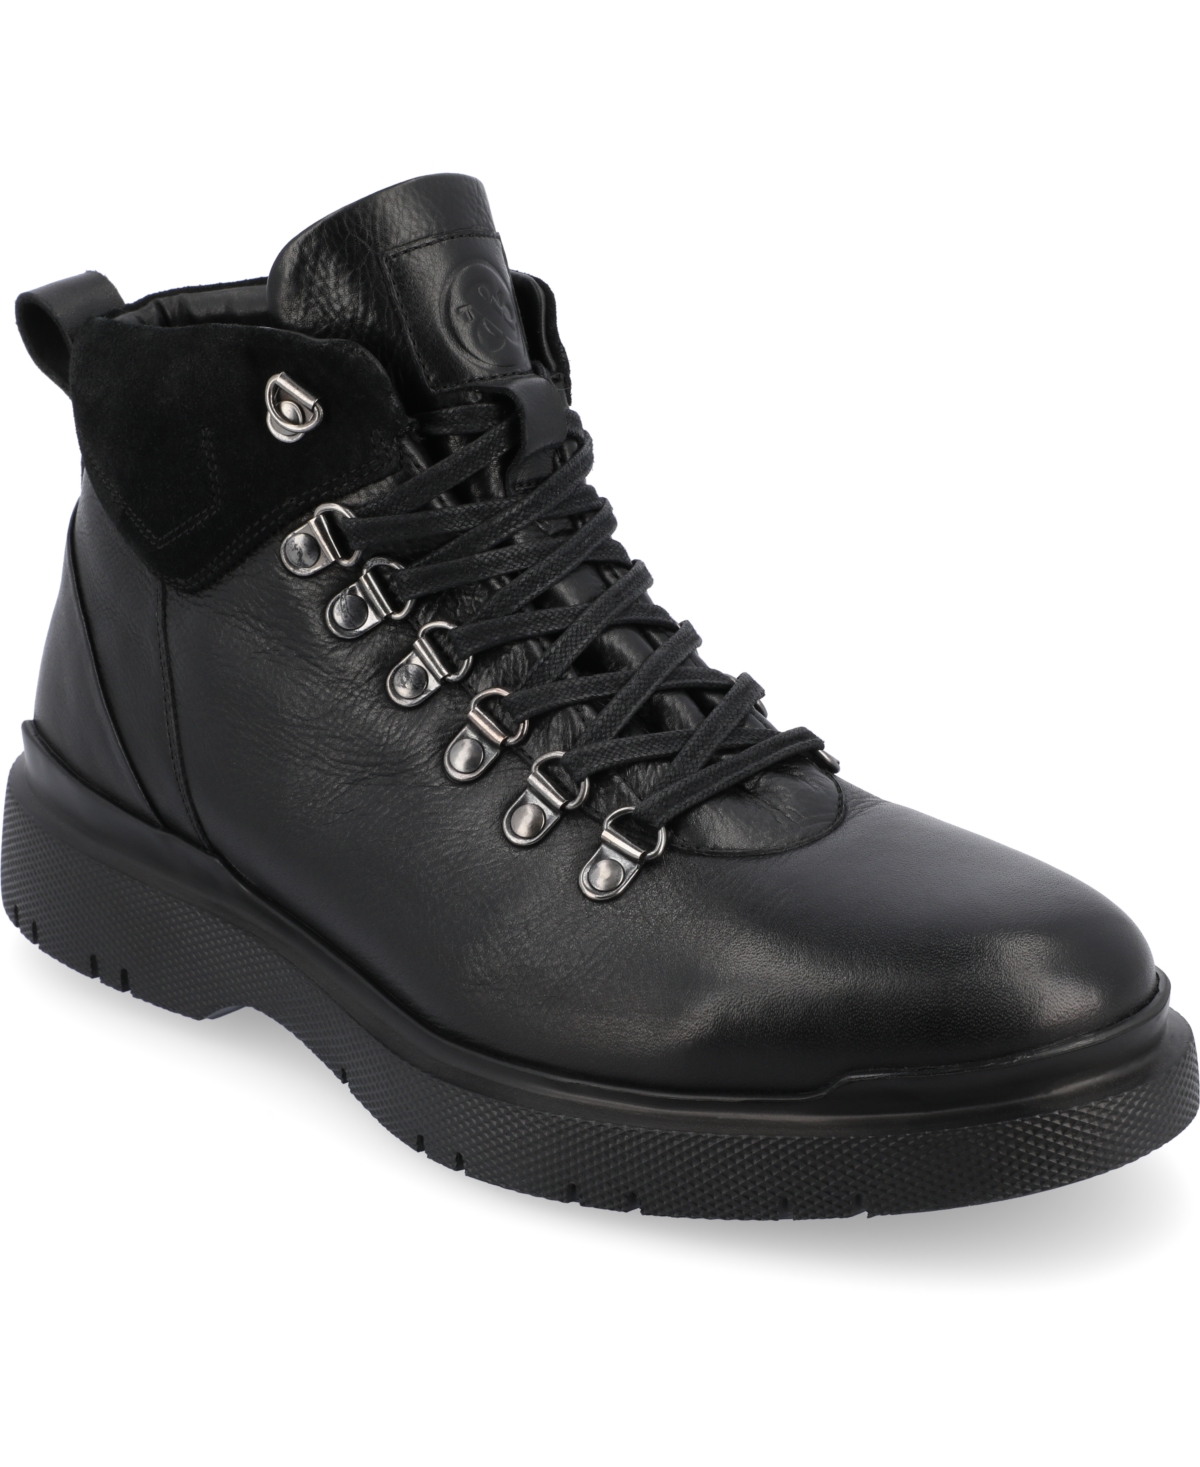 Men's Sherman Water Resistant Tru Comfort Foam Plain Toe Ankle Boots - Black